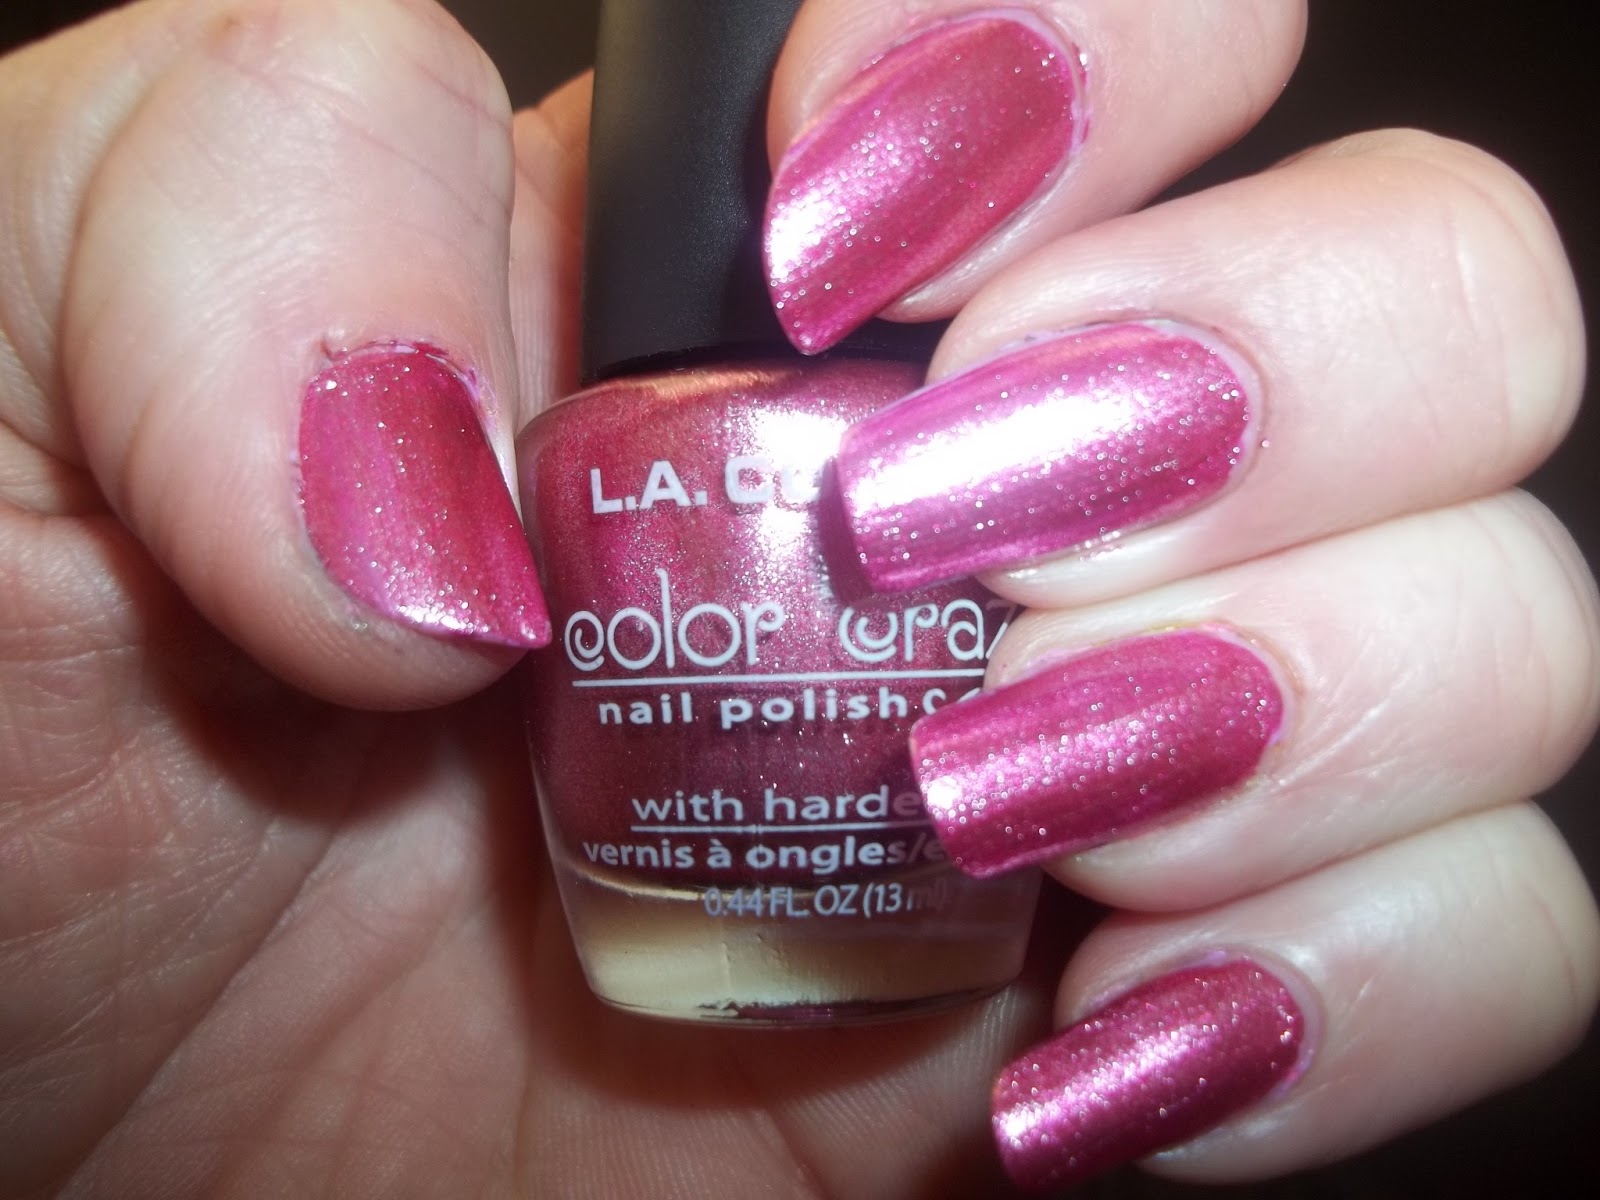 8. L.A. Colors Color Craze Glitter Nail Polish - wide 1